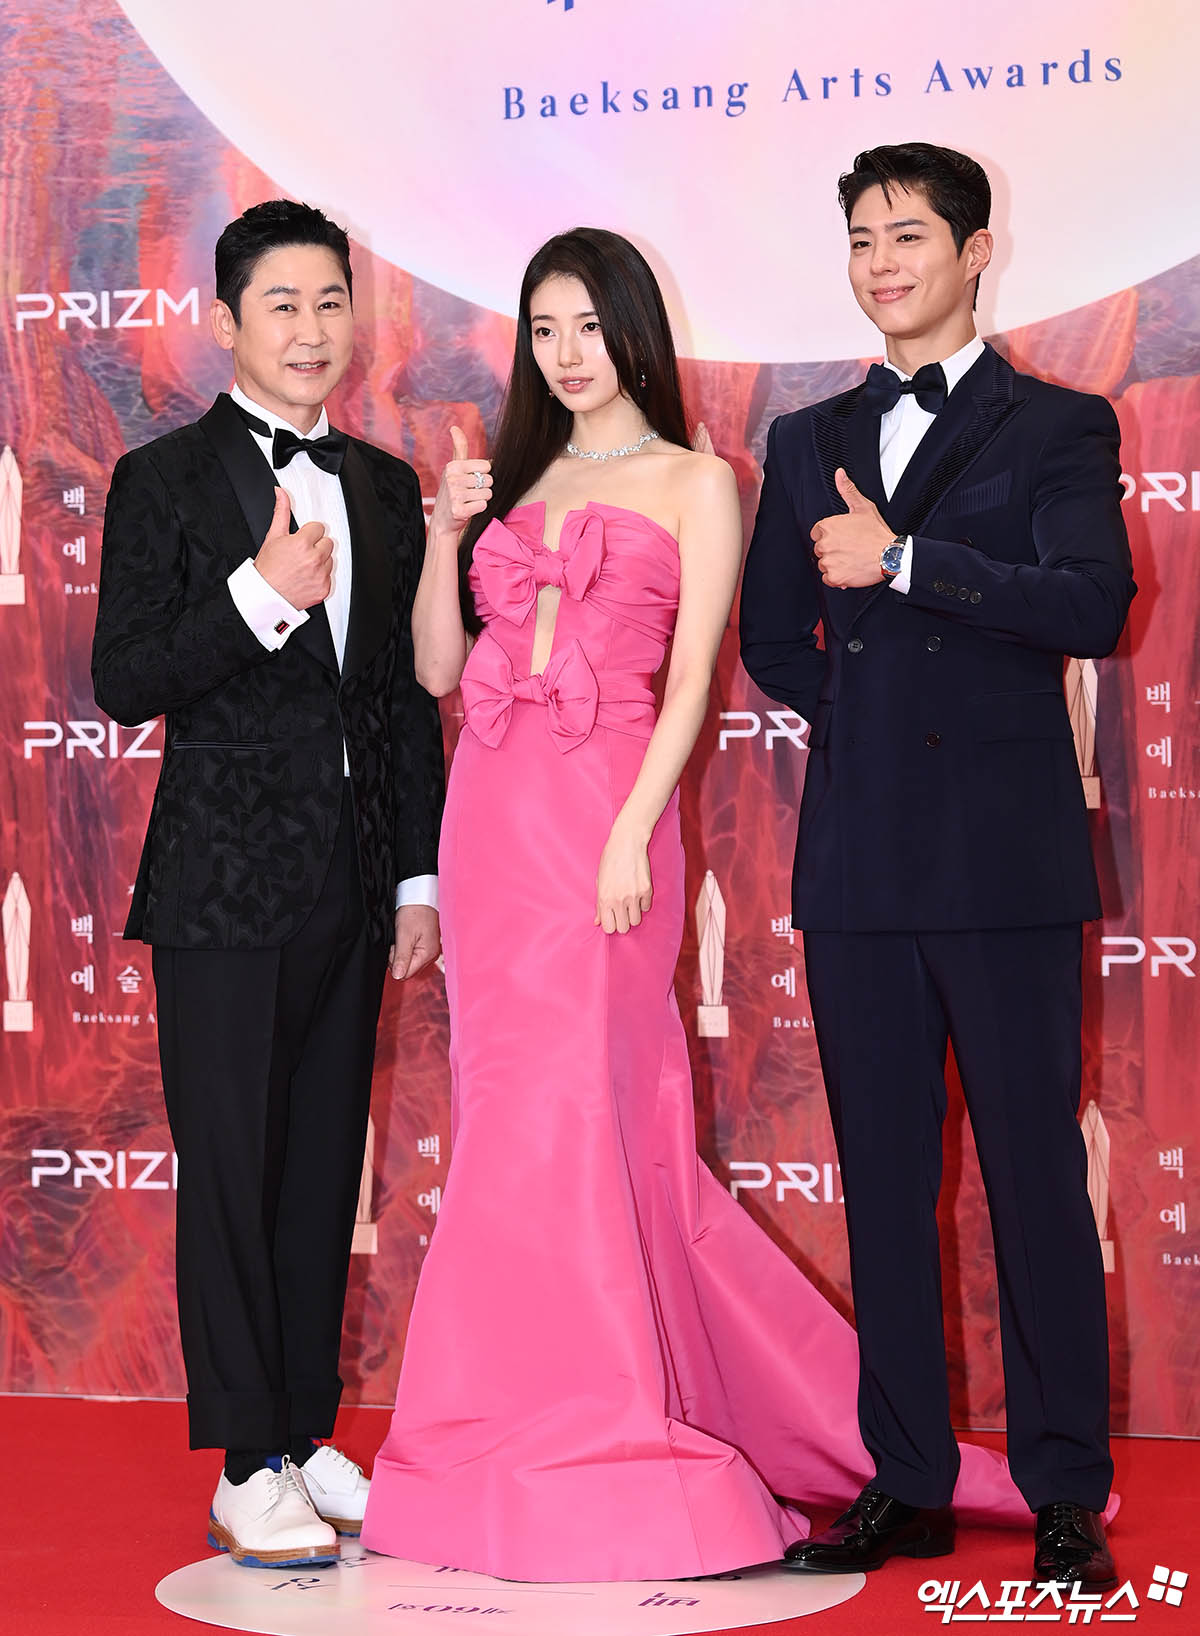 Stars Rock The Red Carpet At The 60th Baeksang Arts Awards